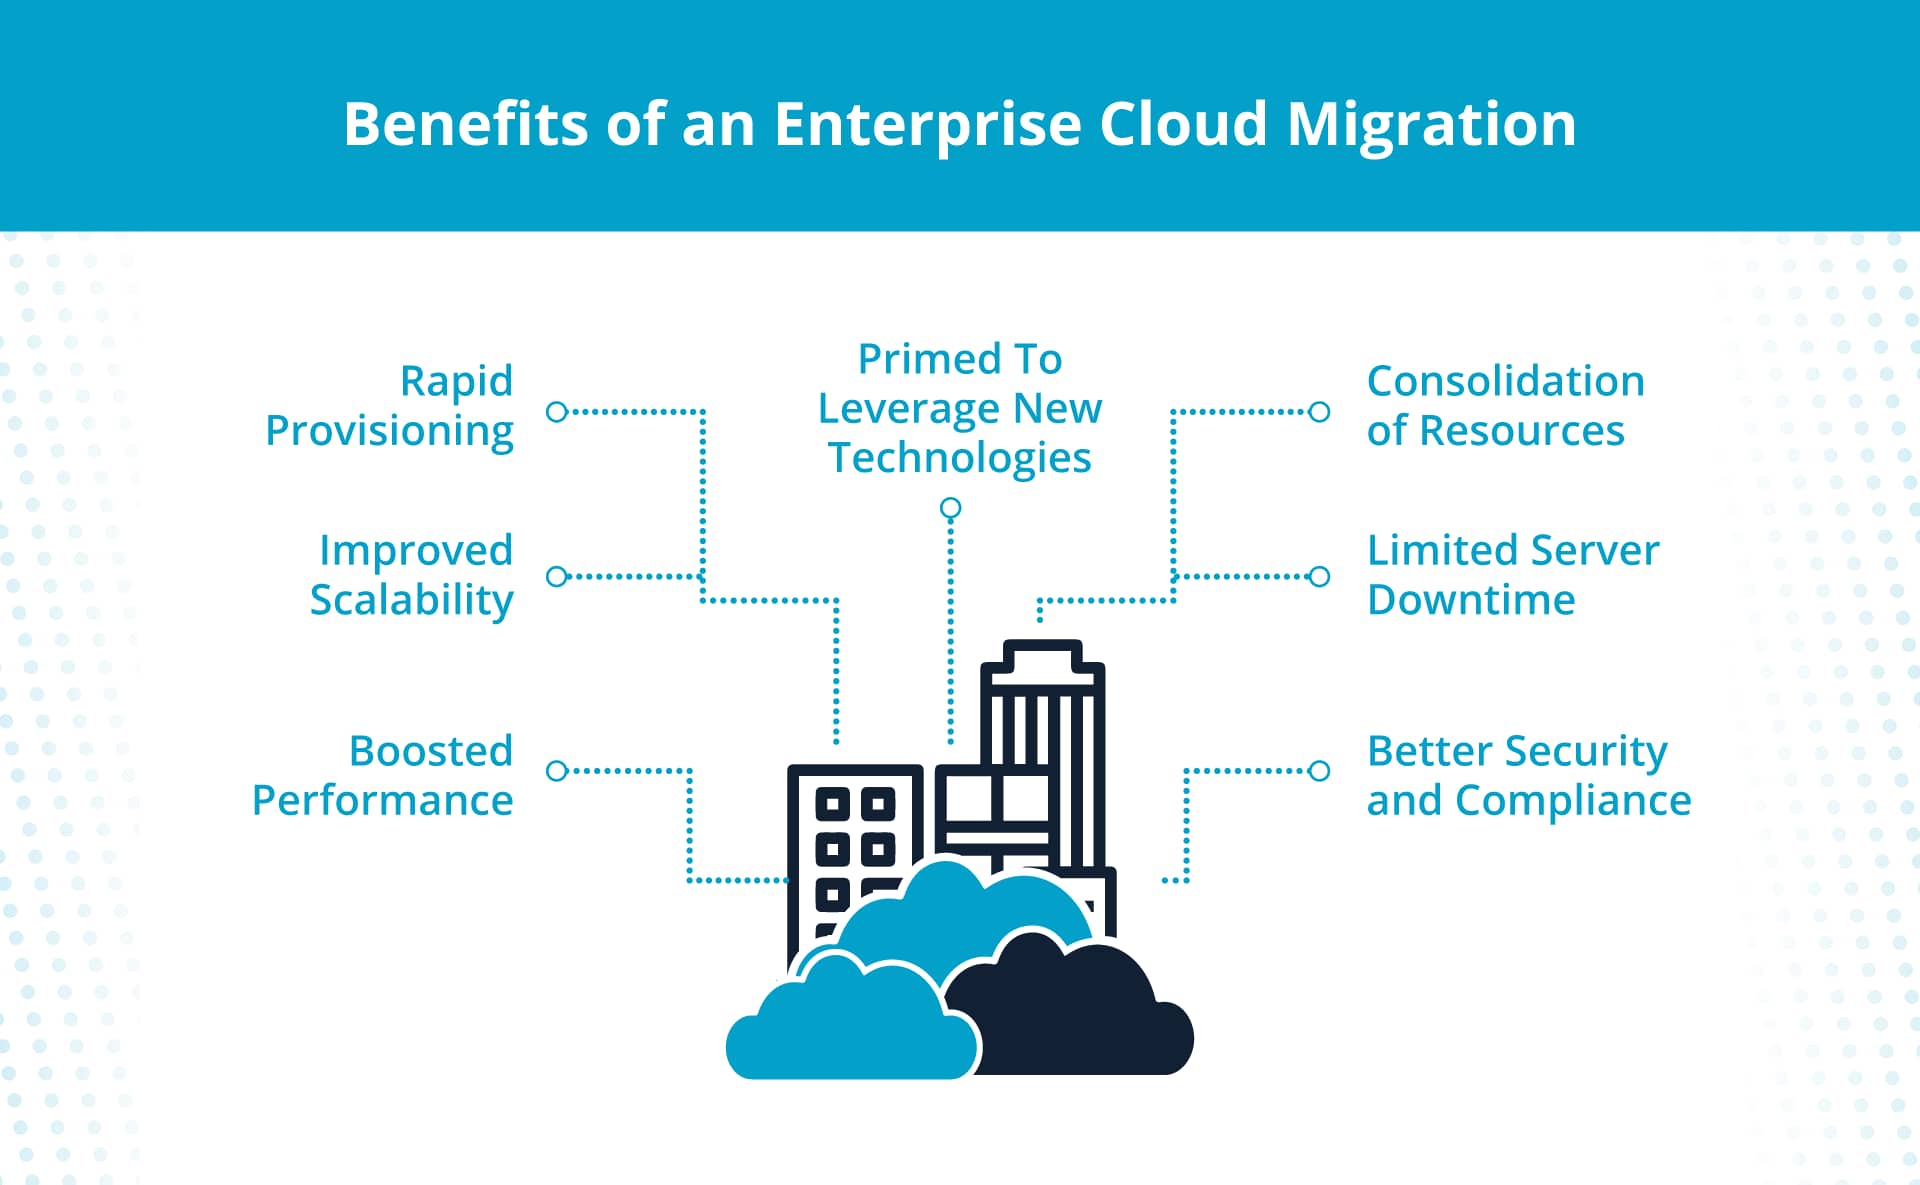 Benefits of an enterprise cloud migration.